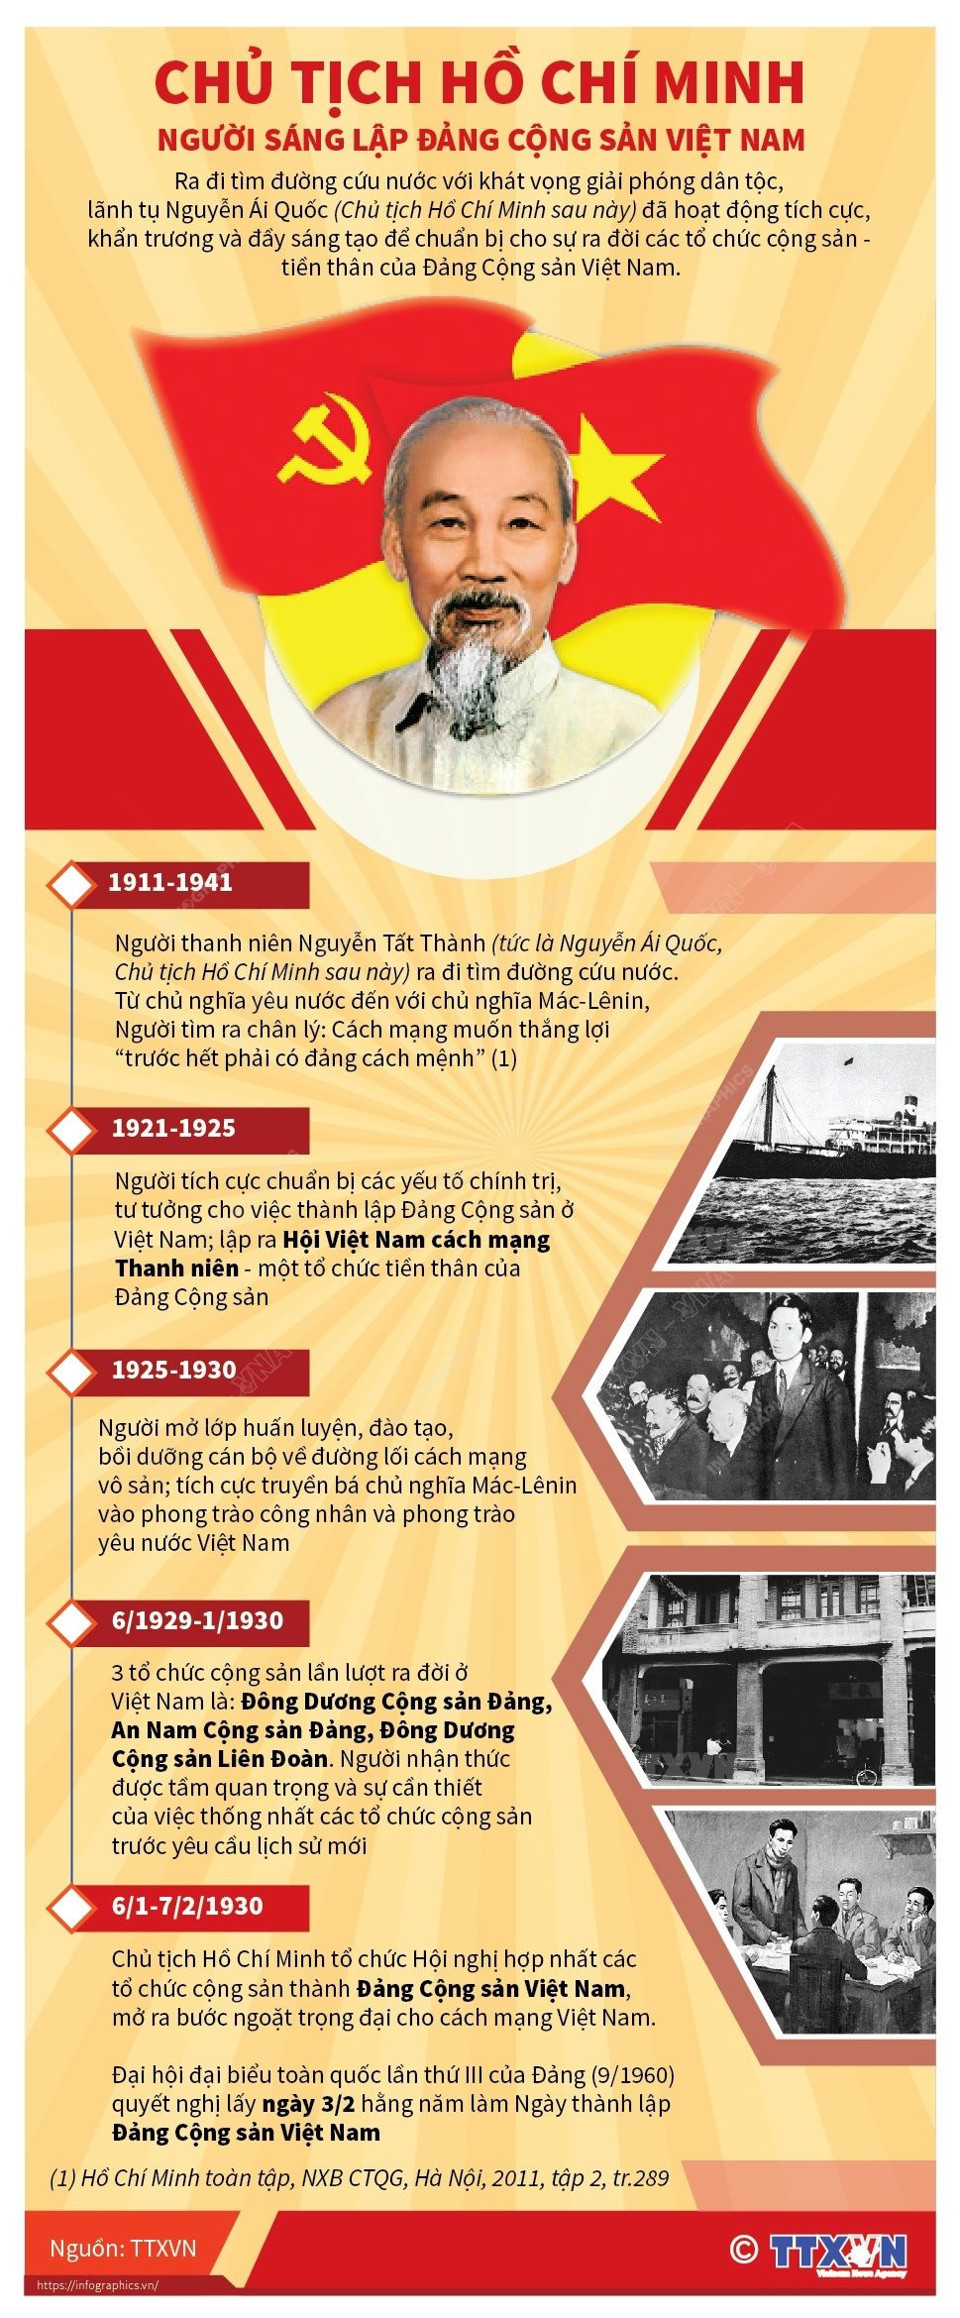 Chủ tịch Hồ Chí Minh: Người sáng lập, lãnh đạo Đảng Cộng sản Việt Nam - Ảnh 4